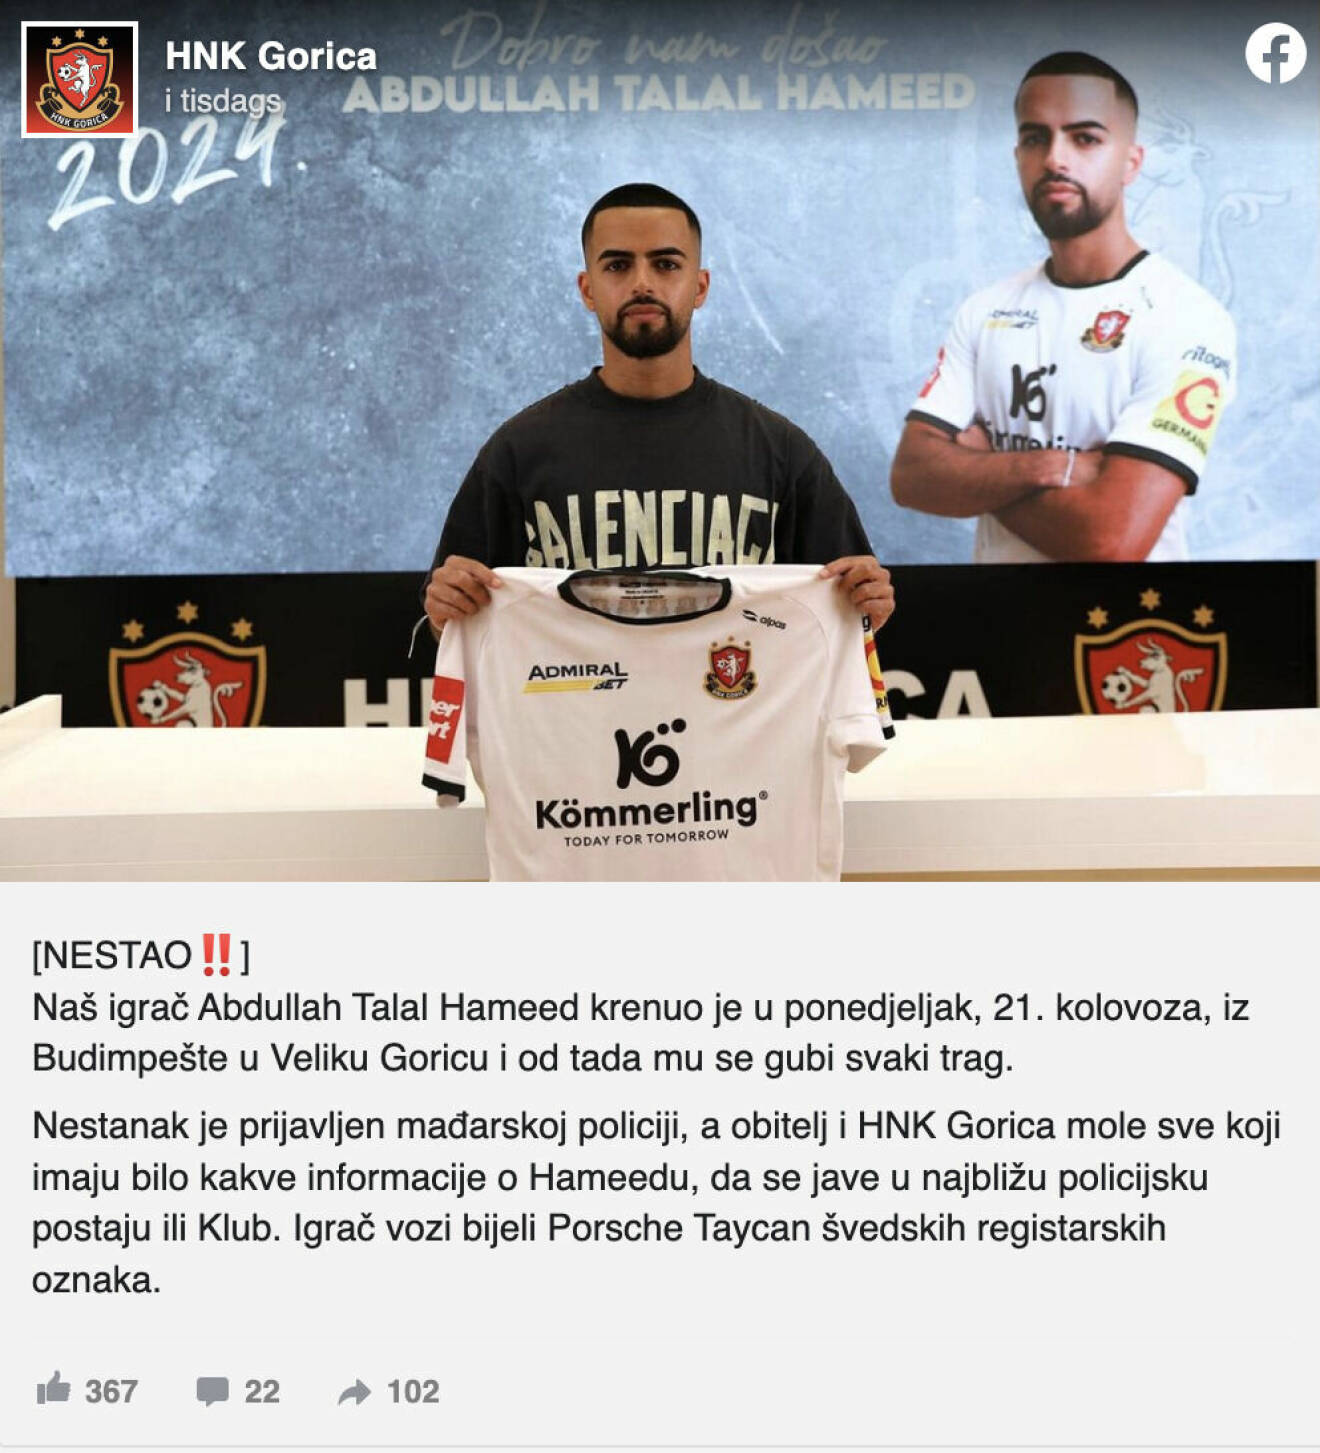 HNK Goricas svensk-irakiske spelare är spårlöst försvunnen.